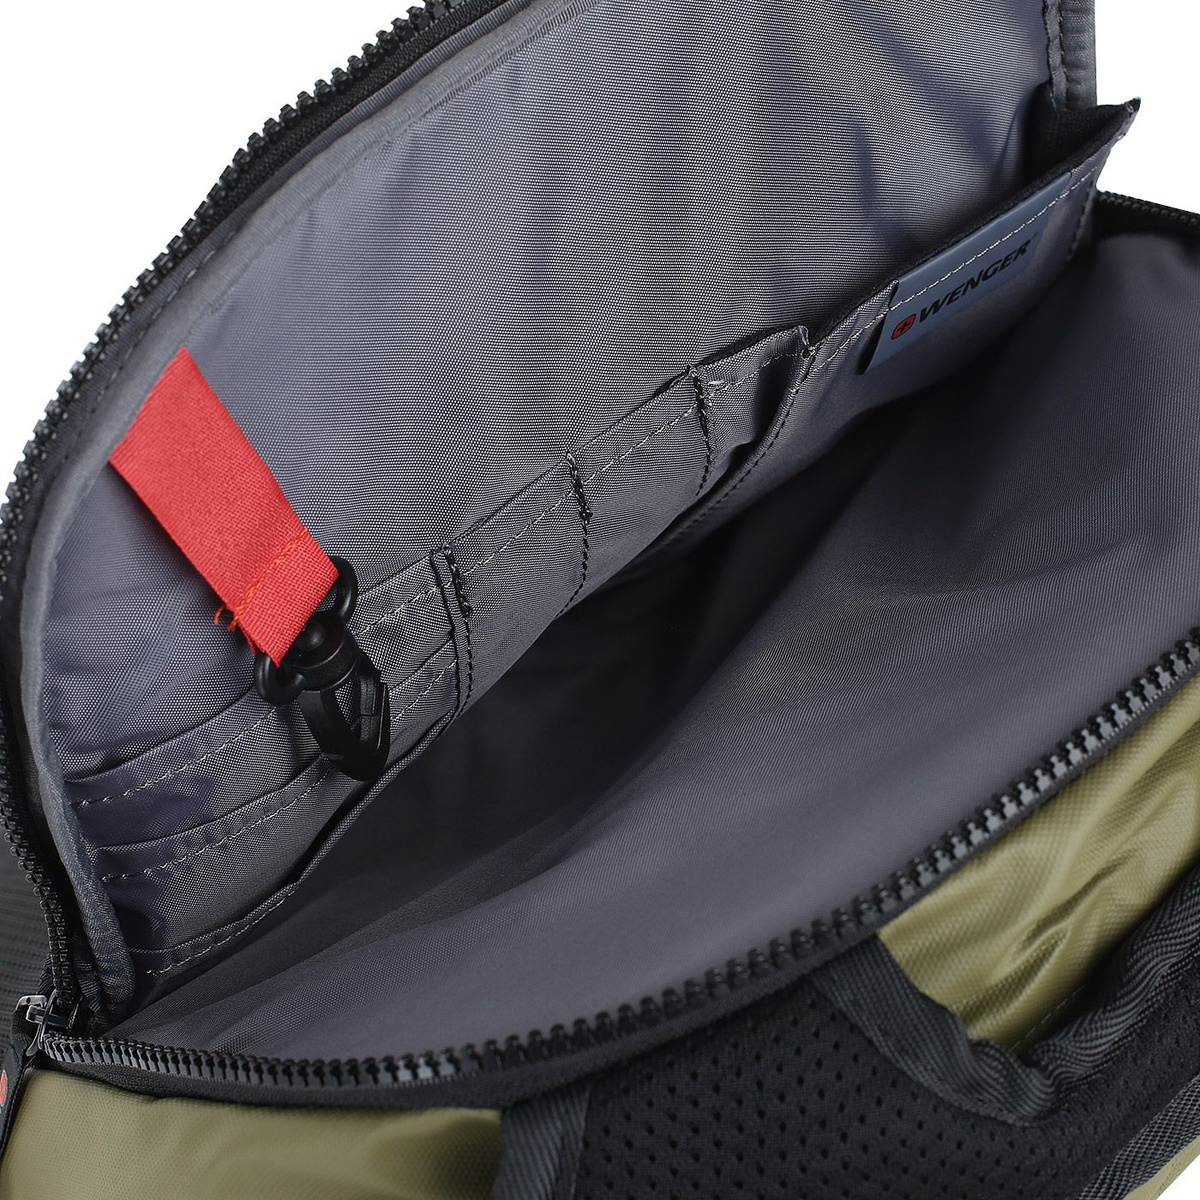 Потайной карман в спинке рюкзака для ценных вещей - Карман-органайзер включает в себя карабин для ключей и многочисленные кармашки для ручек, мобильного телефона и документов